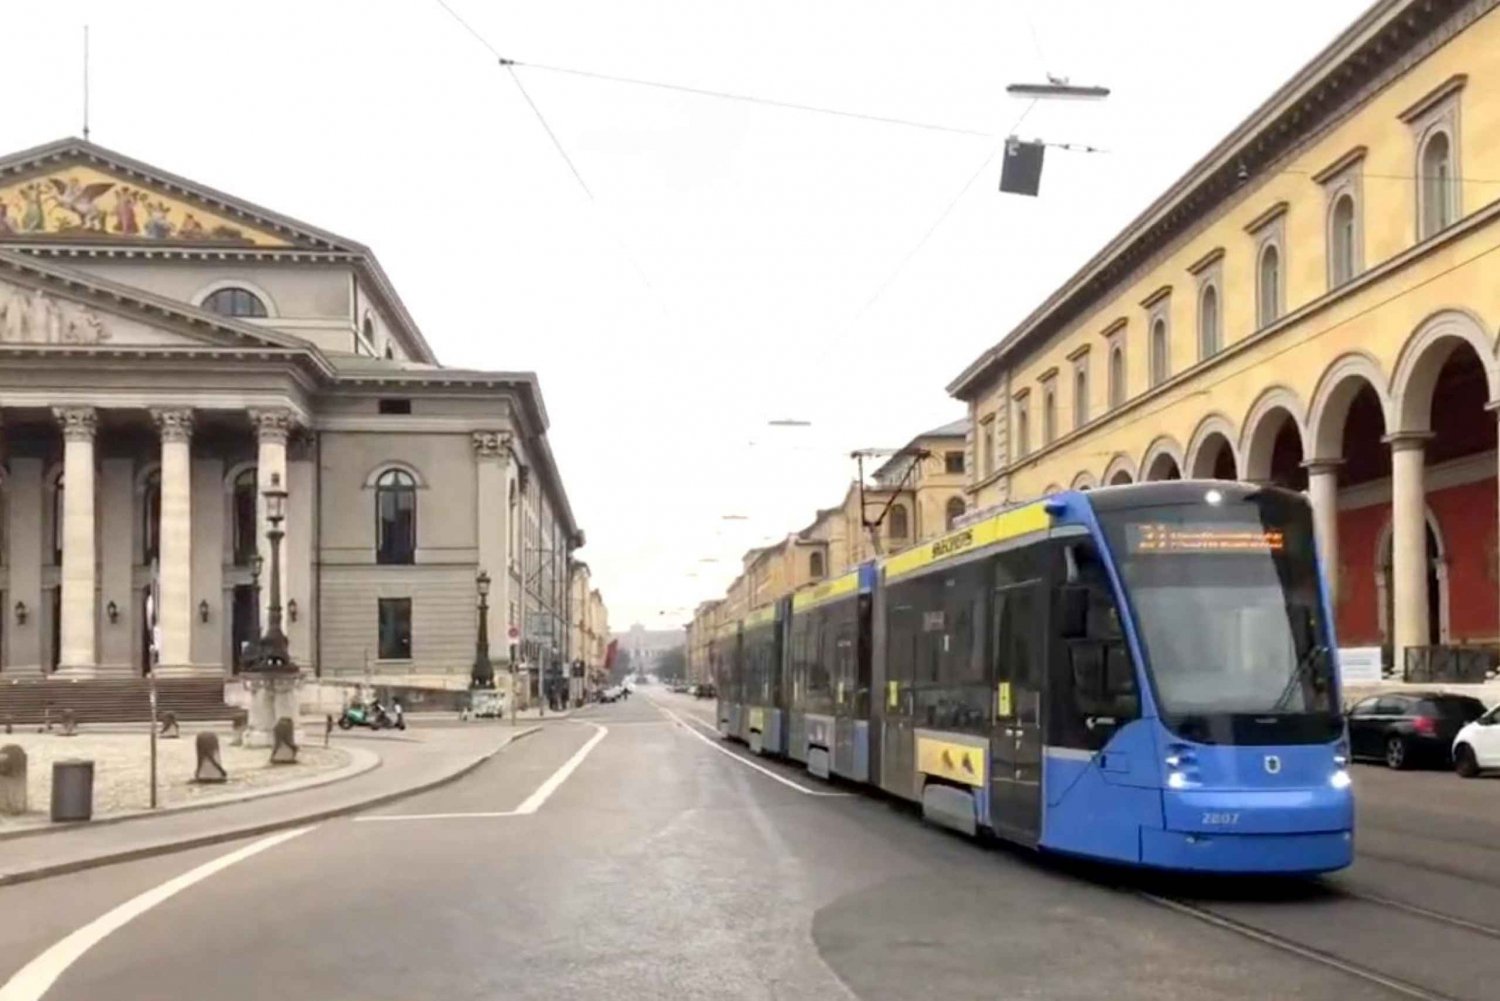 Múnich: Una visita a la ciudad en tranvía